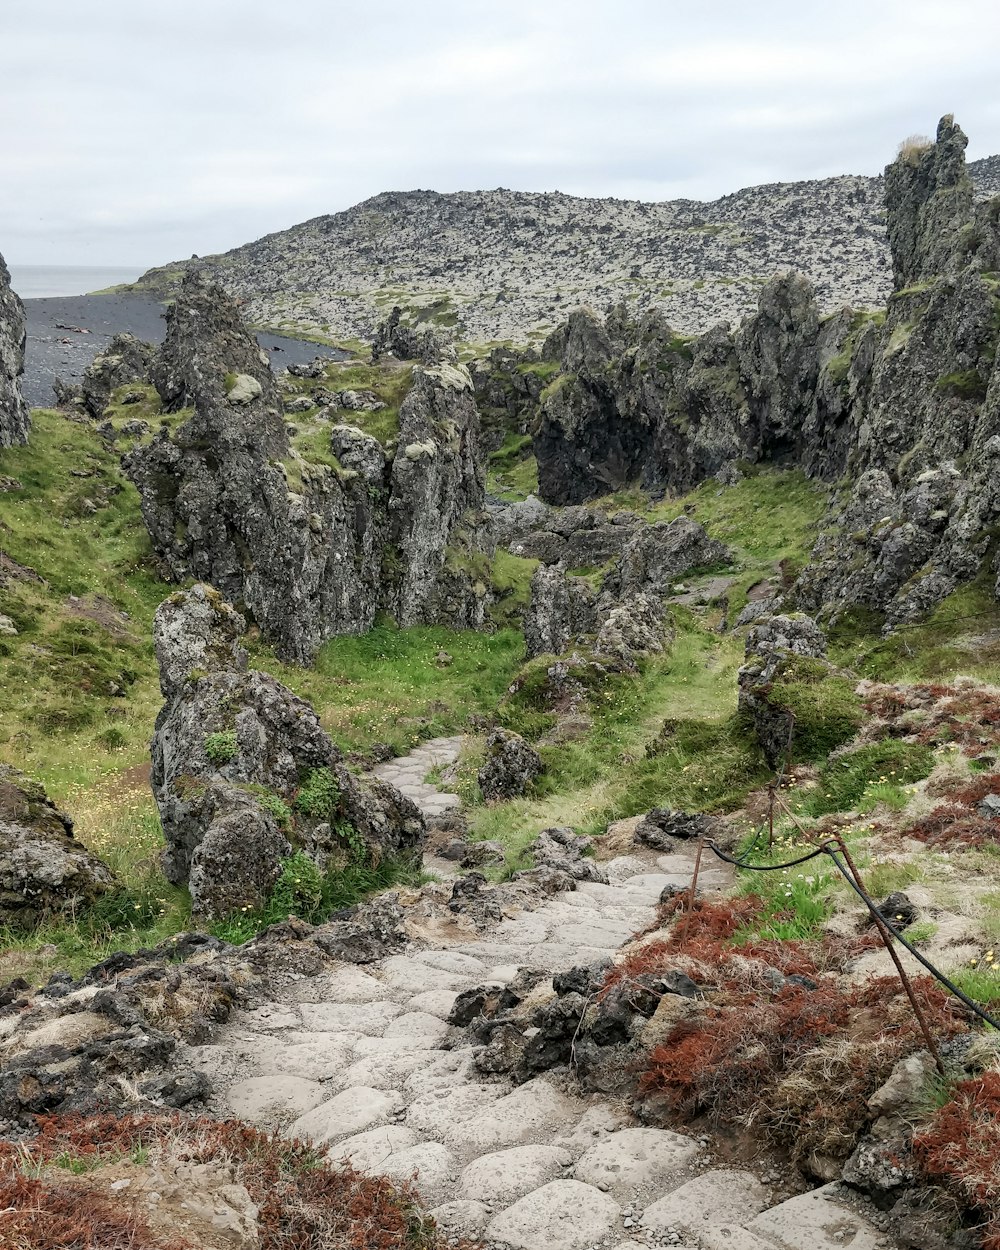 Un camino de piedra en una zona rocosa con hierba y rocas